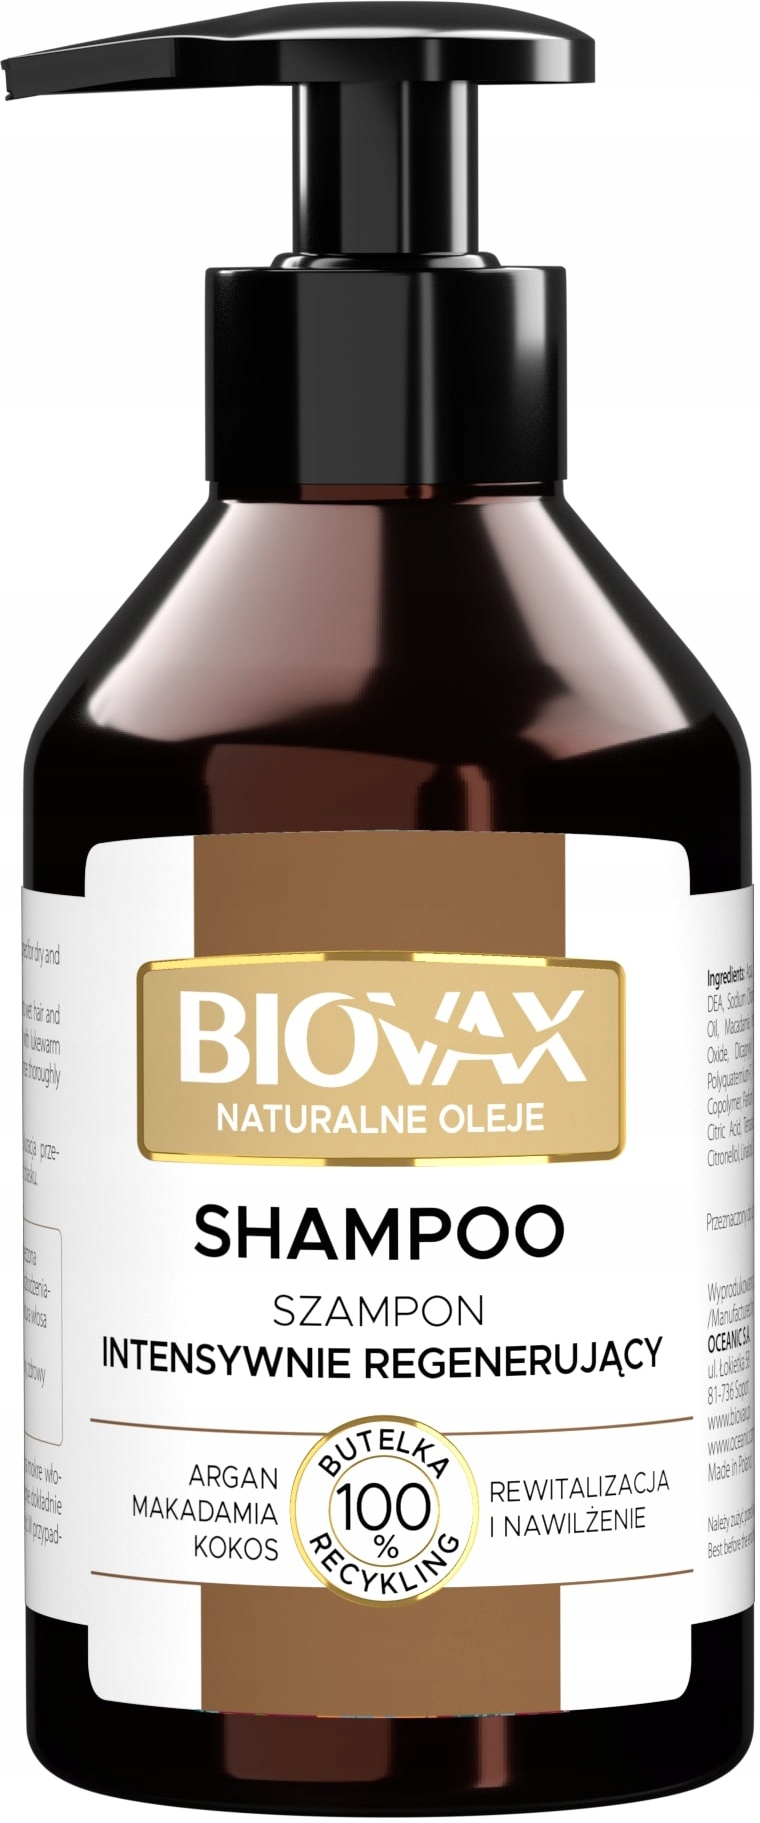 tolpa czy biovax szampon